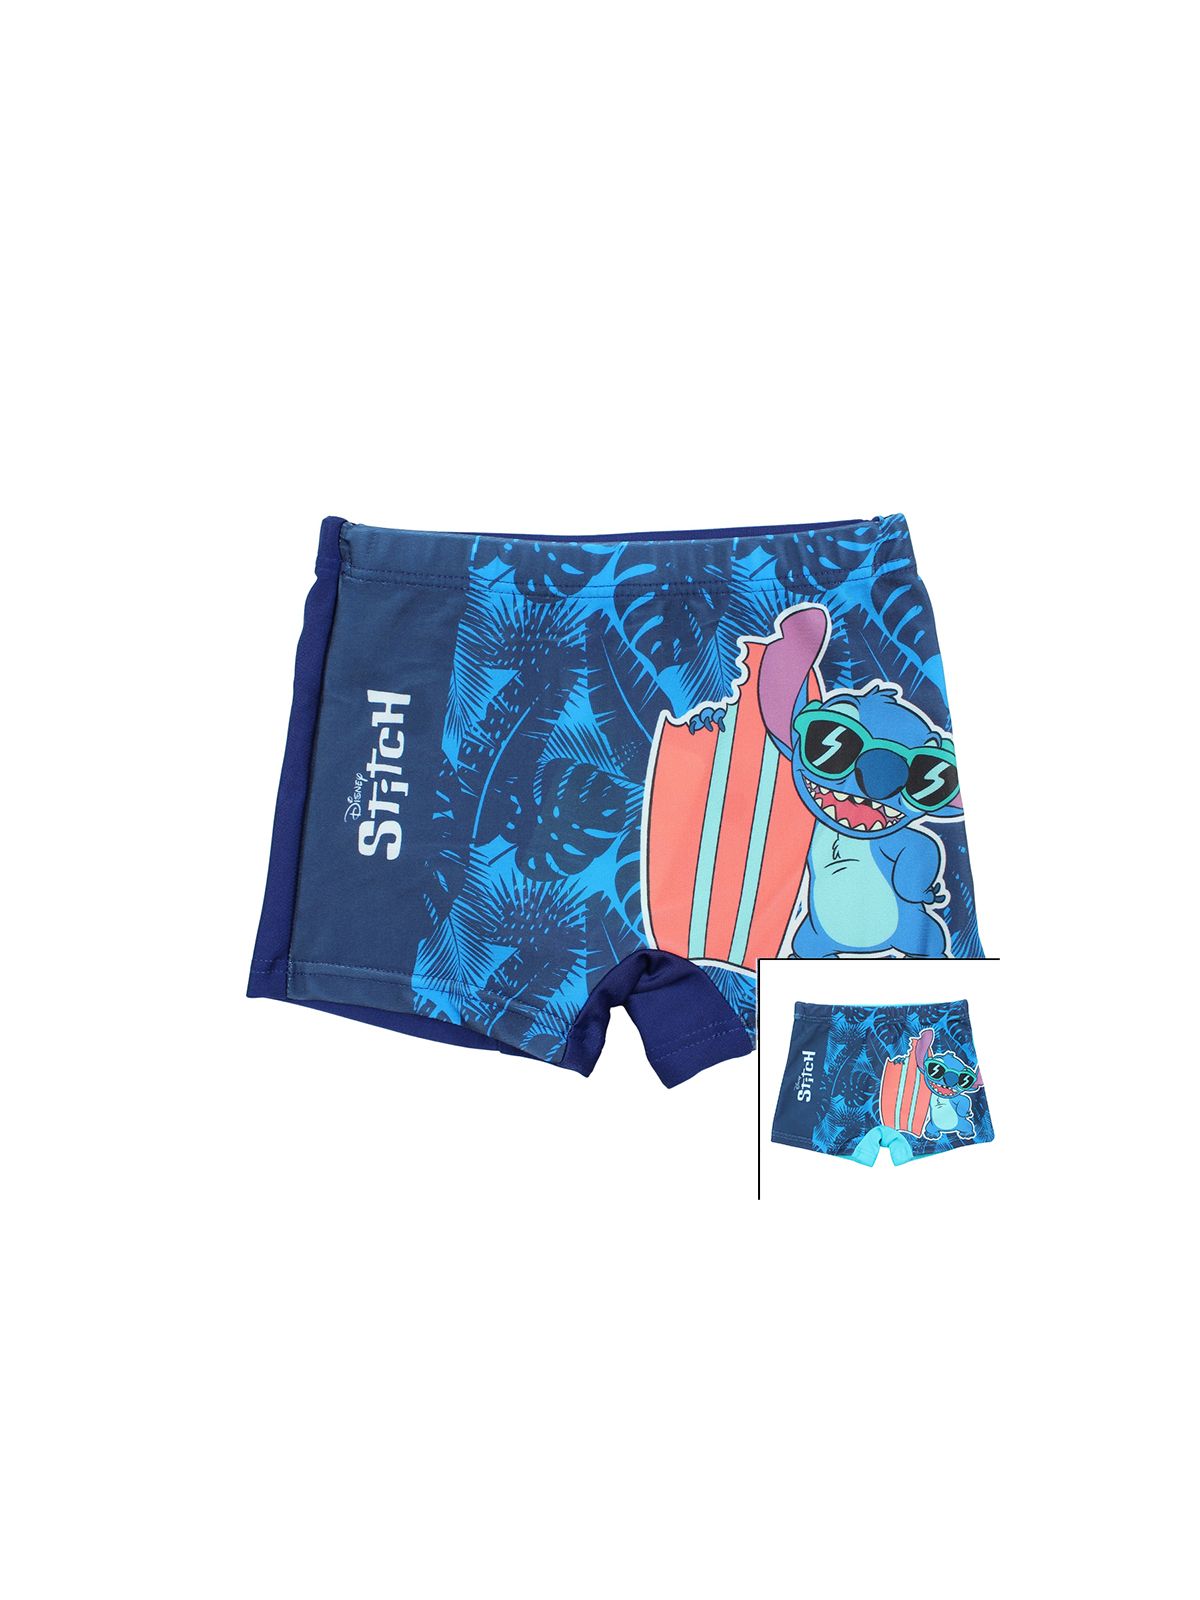 Lilo & Stitch swim trunks.